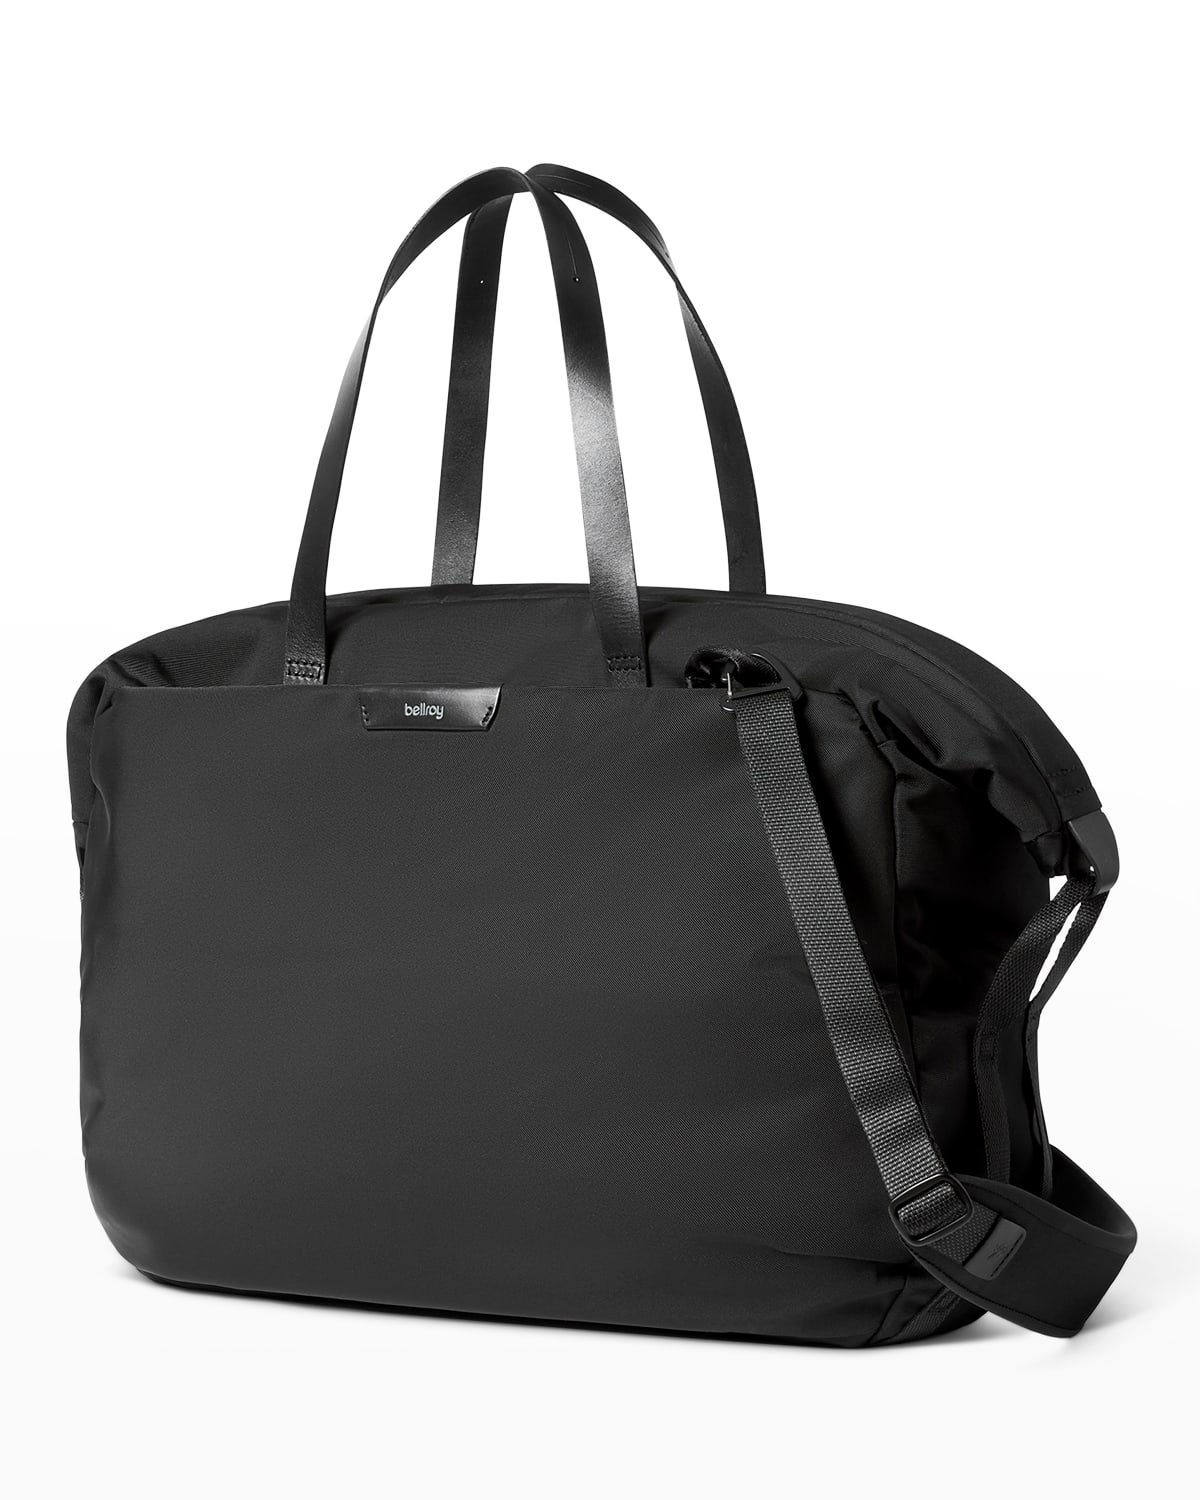 Bellroy Men's Weekender Water-Resistant Carry-On Travel Bag